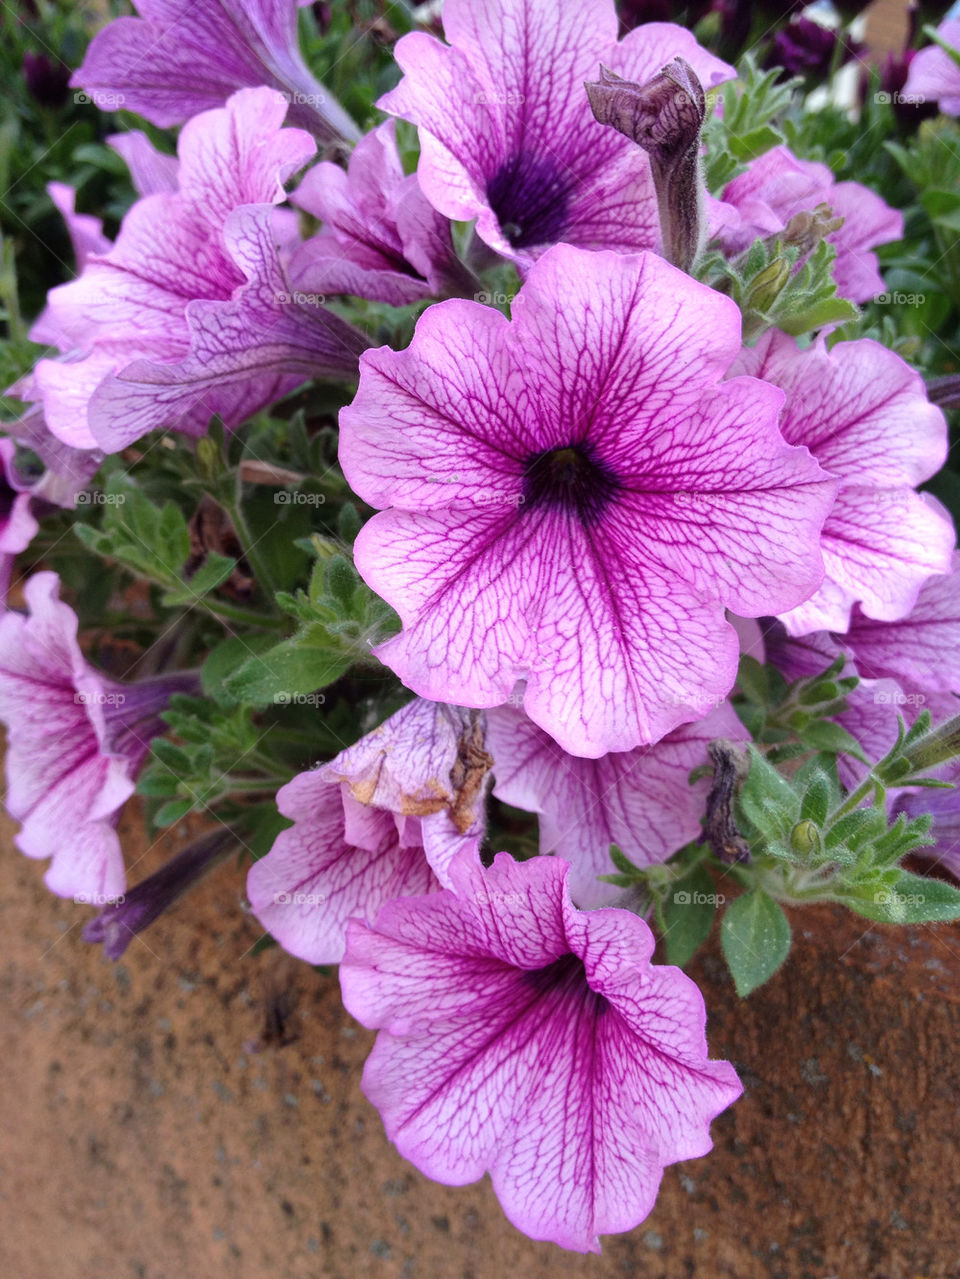 flowers garden plants purple by carina71